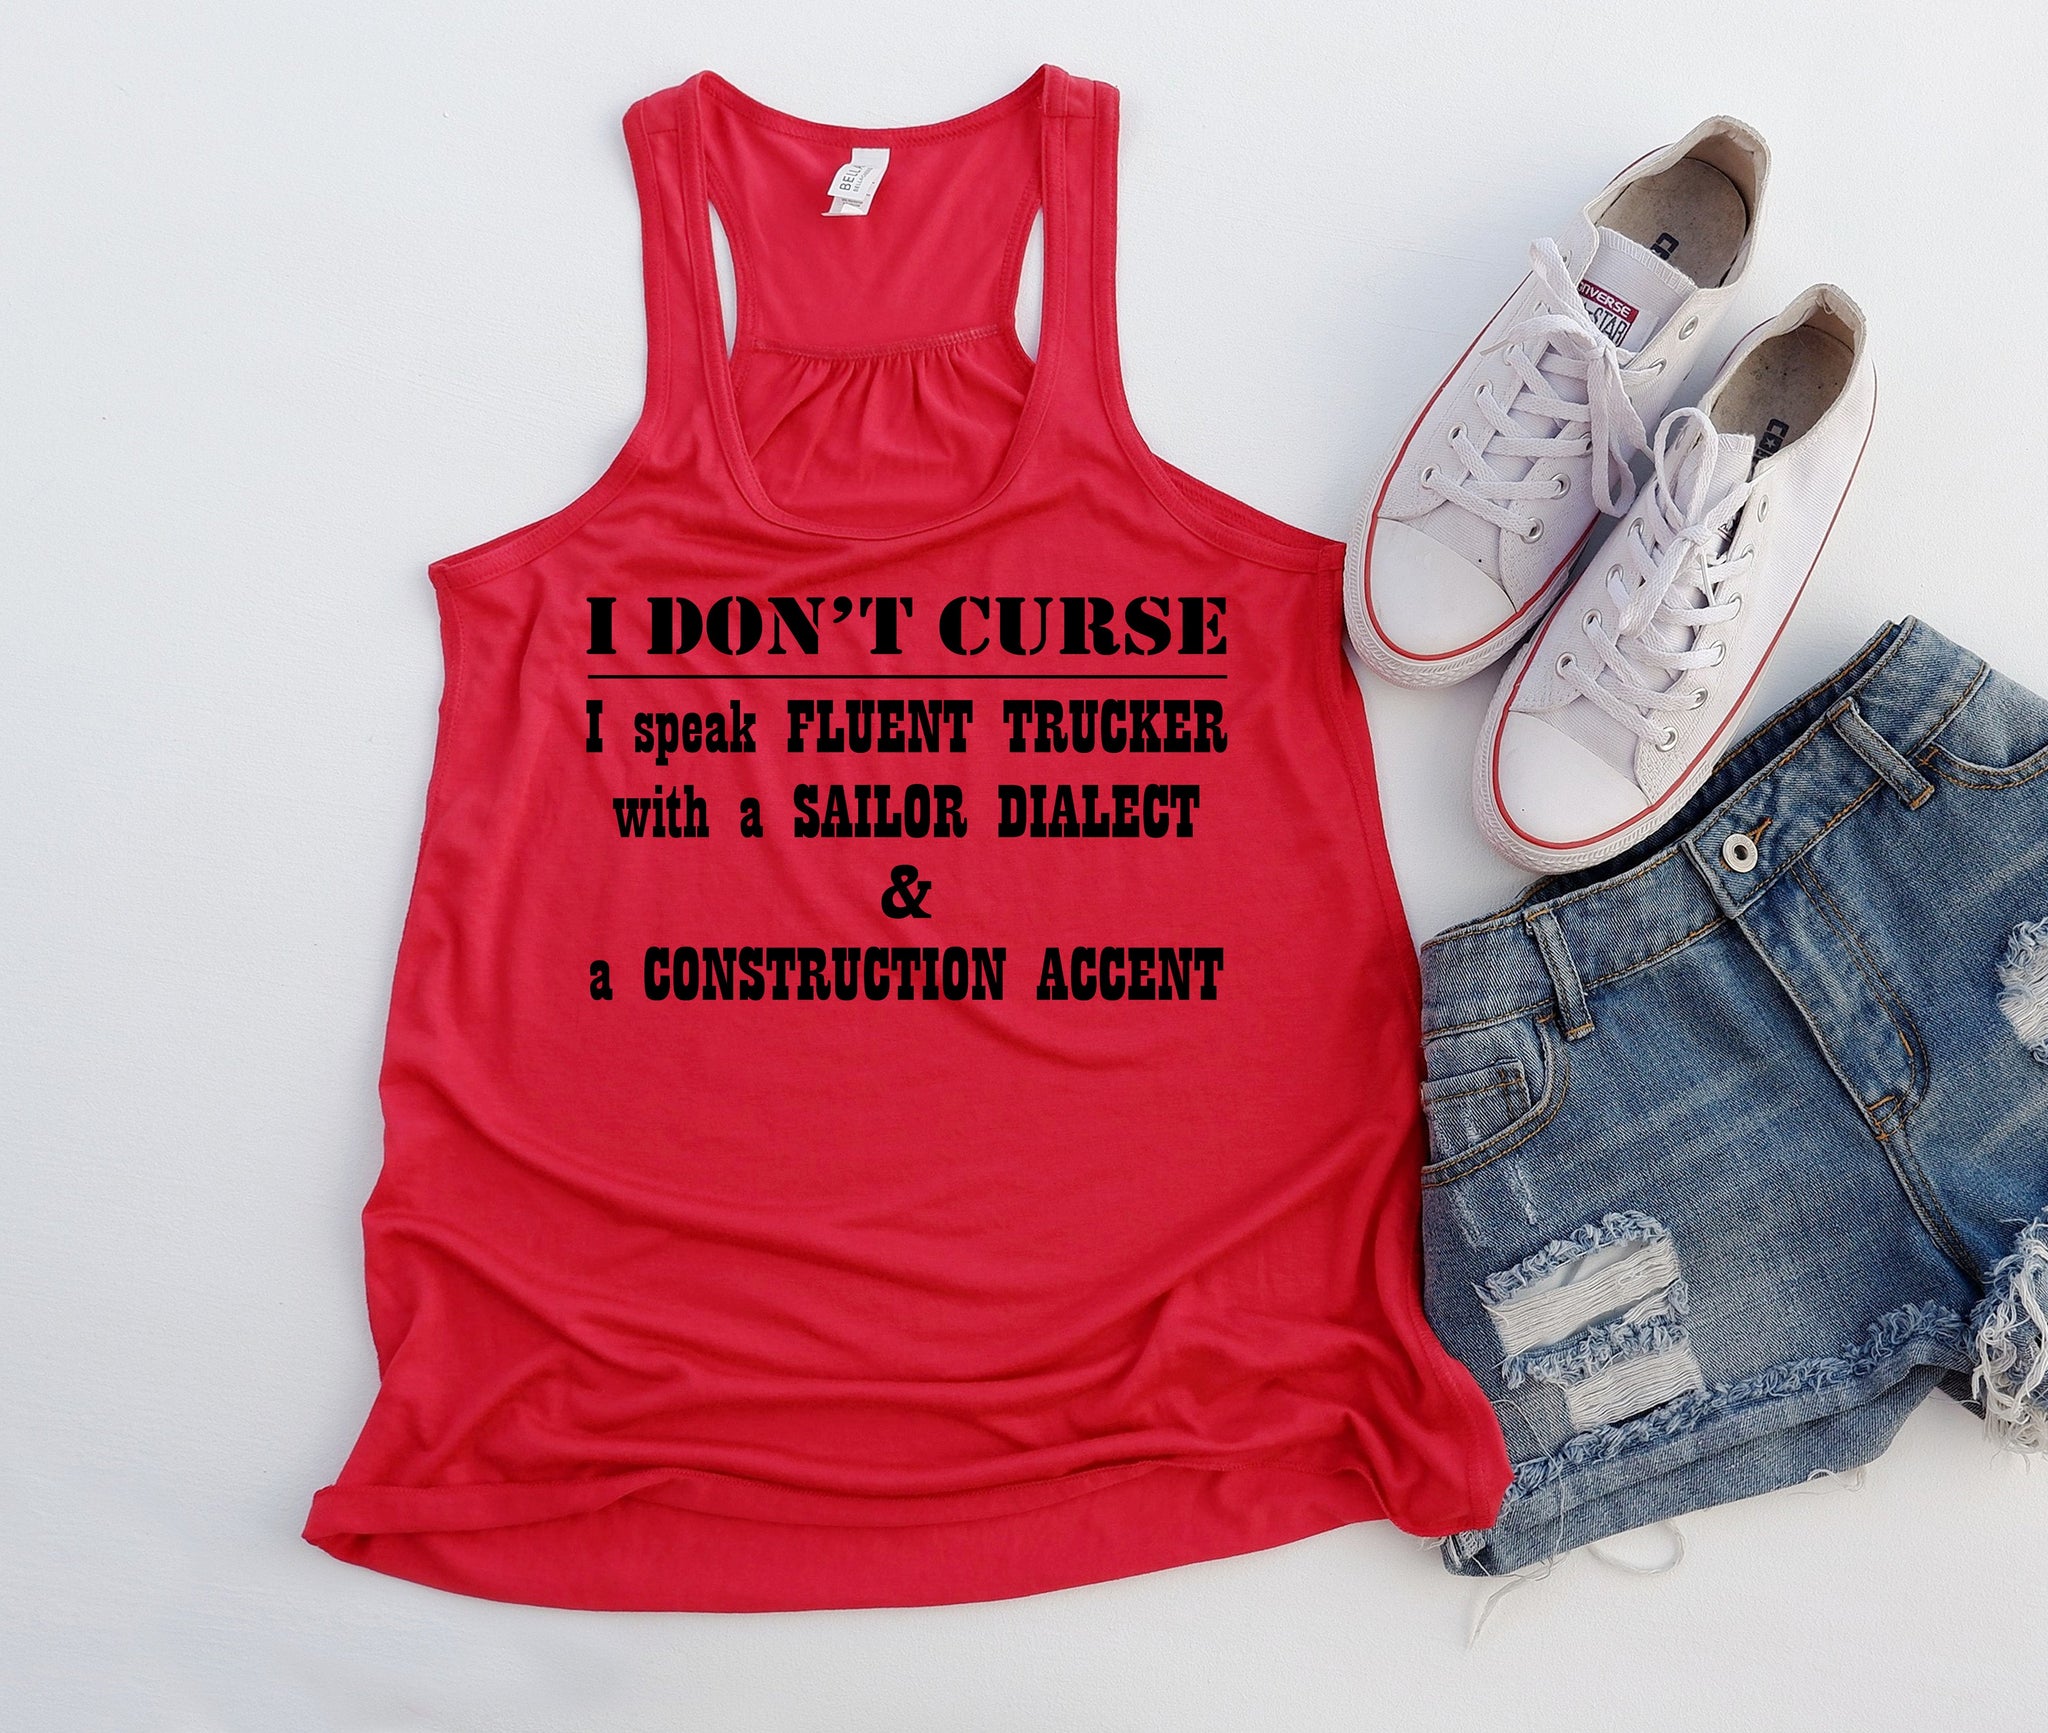 I don't curse